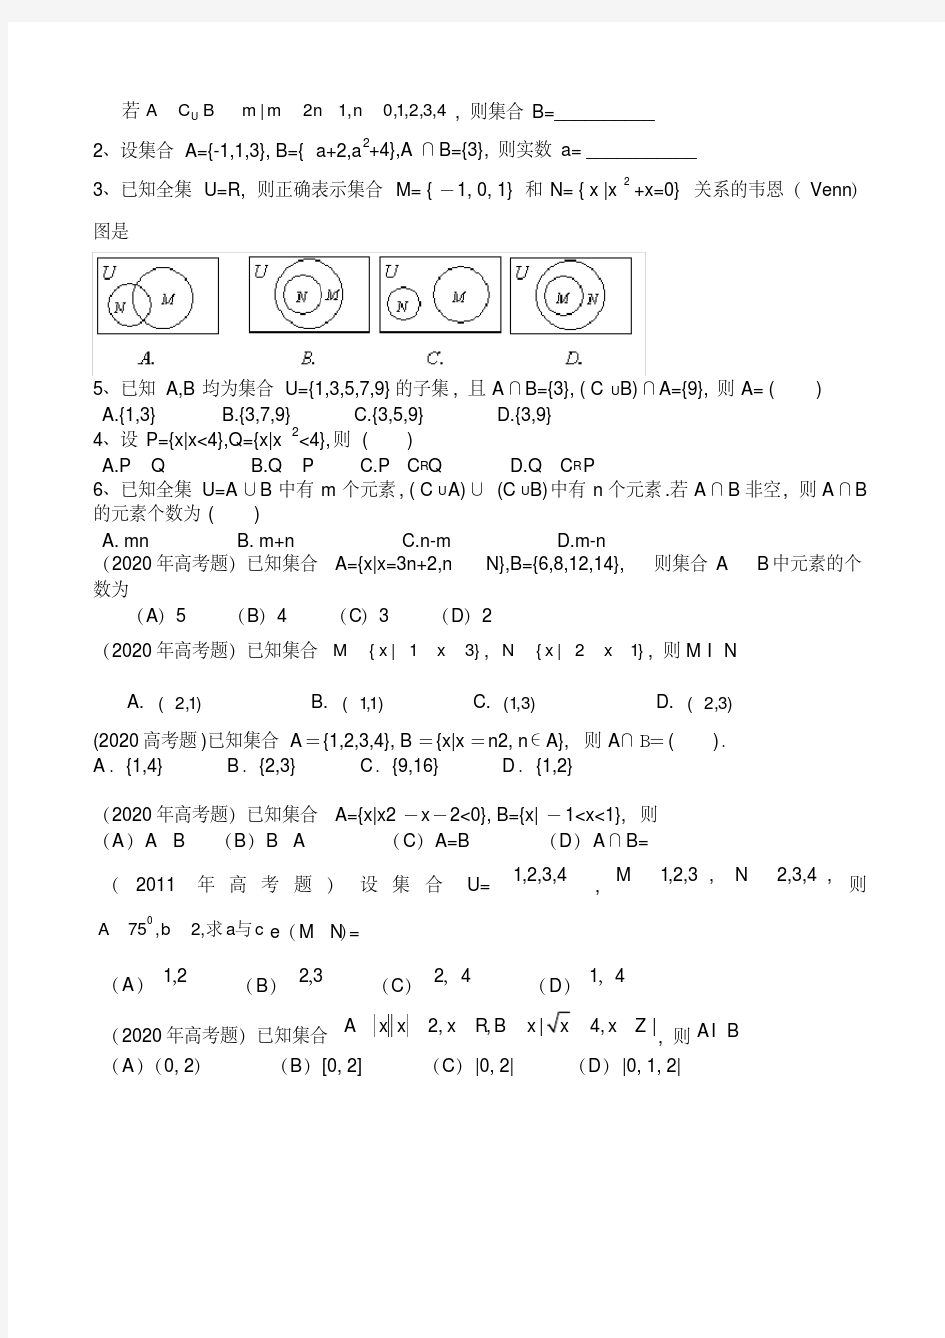 高考文科数学集合习题精选(20200618130349)